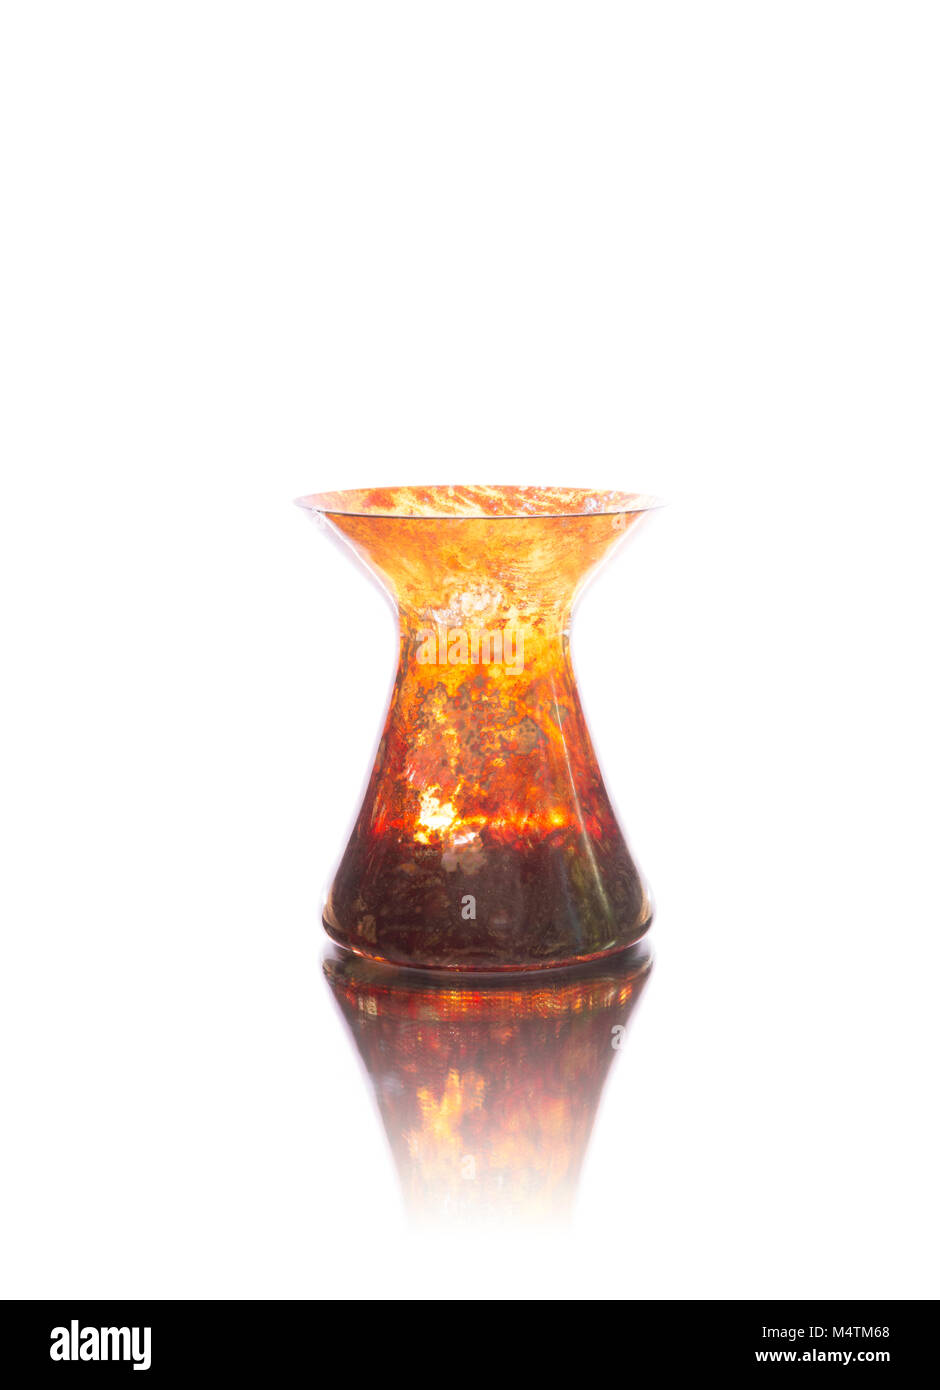 Antique onyx vase isolated on white background Stock Photo